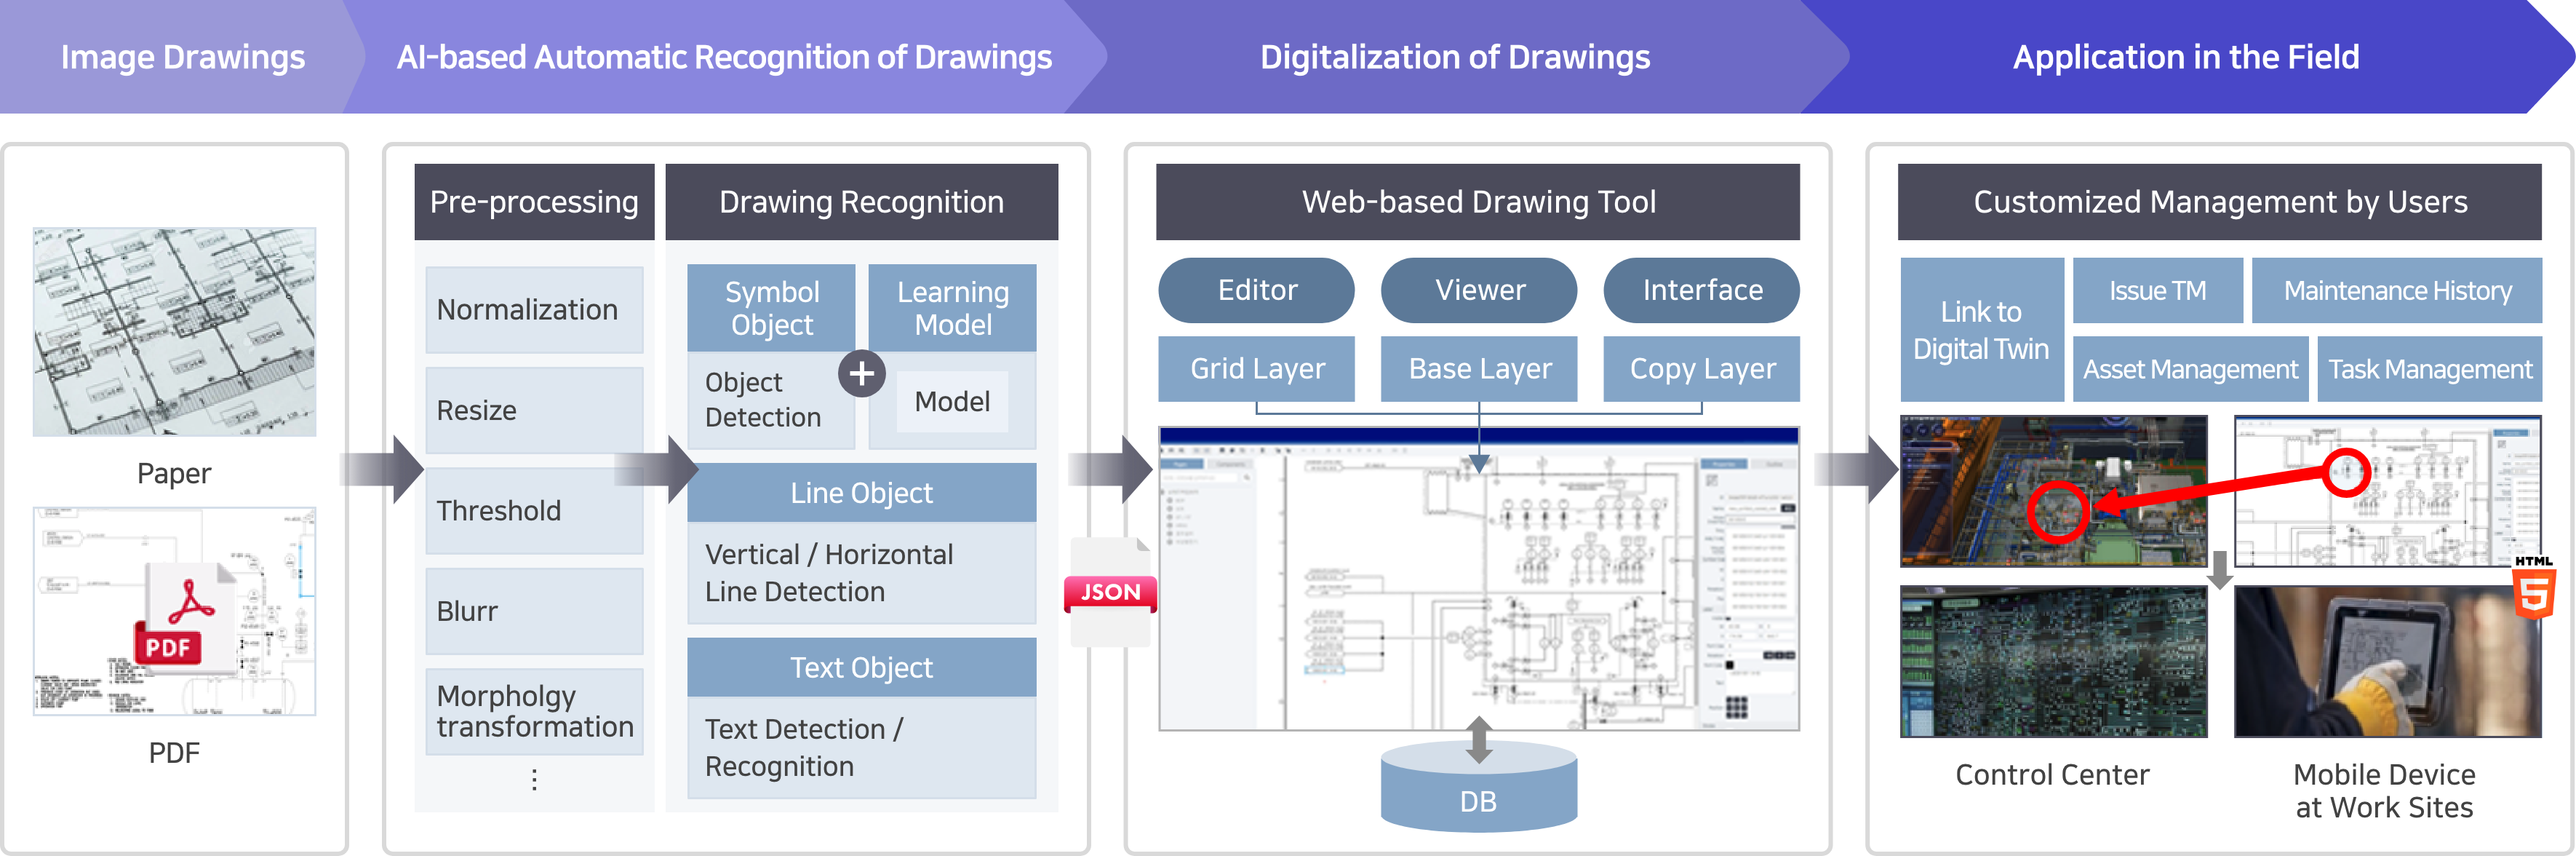 AI-based P&ID drawing digitization process